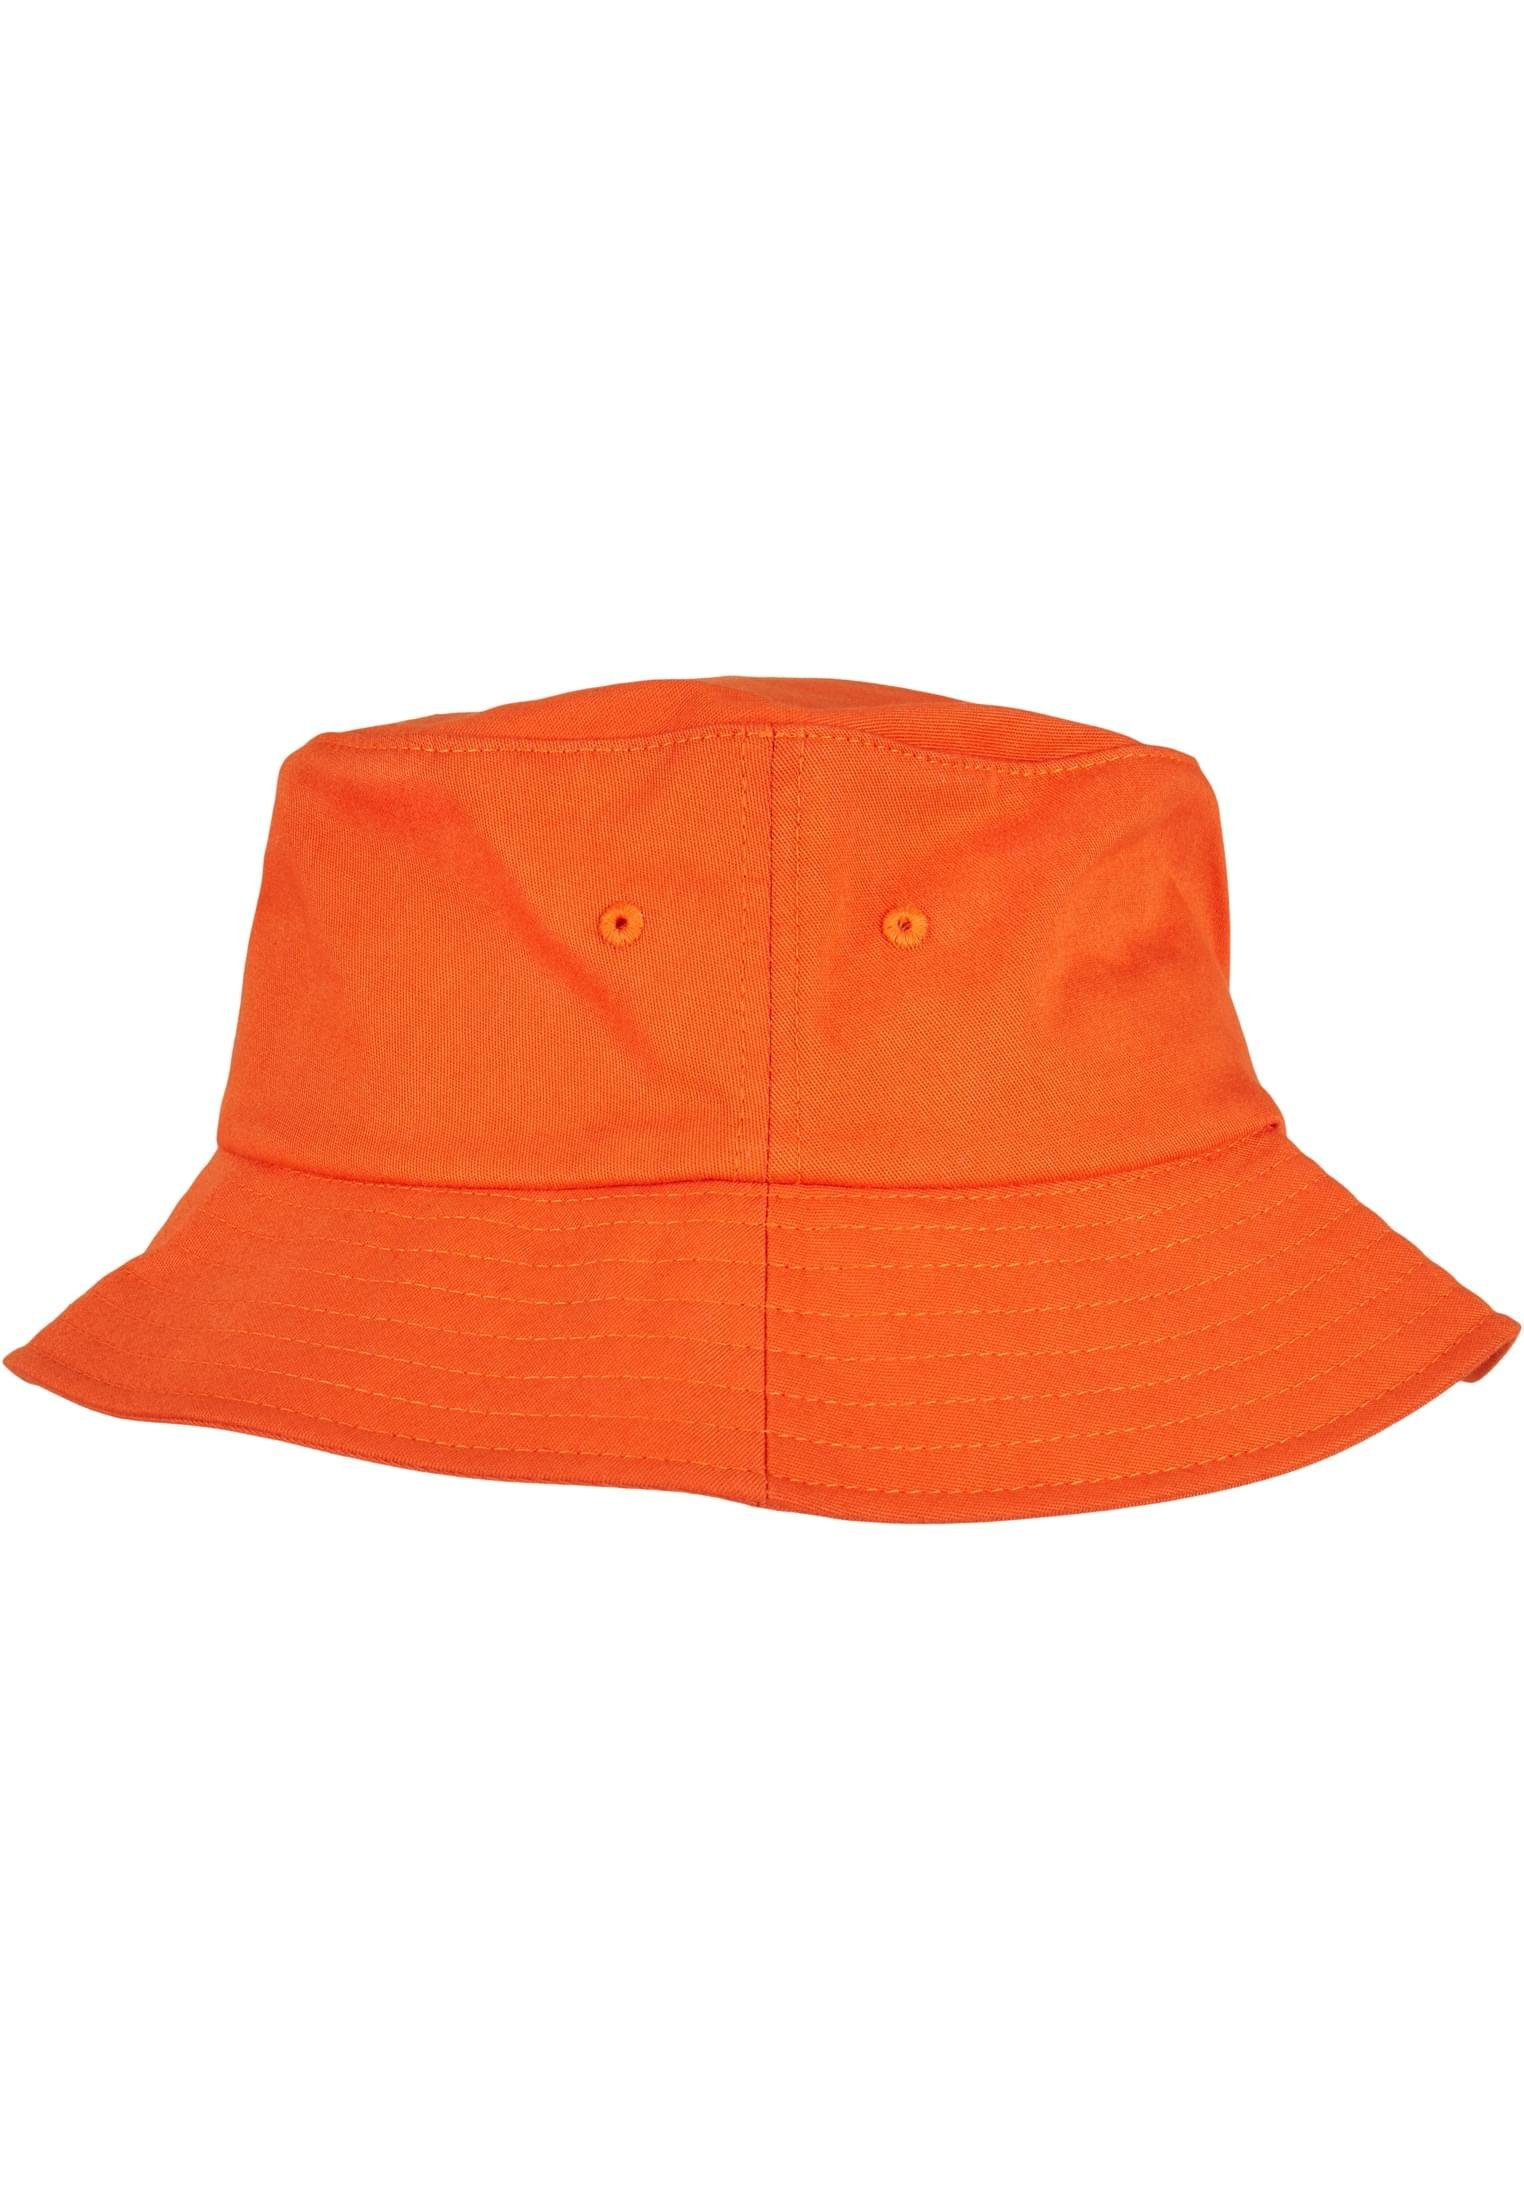 Hat Twill Bucket Flexfit orange Flex Cotton Accessoires Flexfit Cap